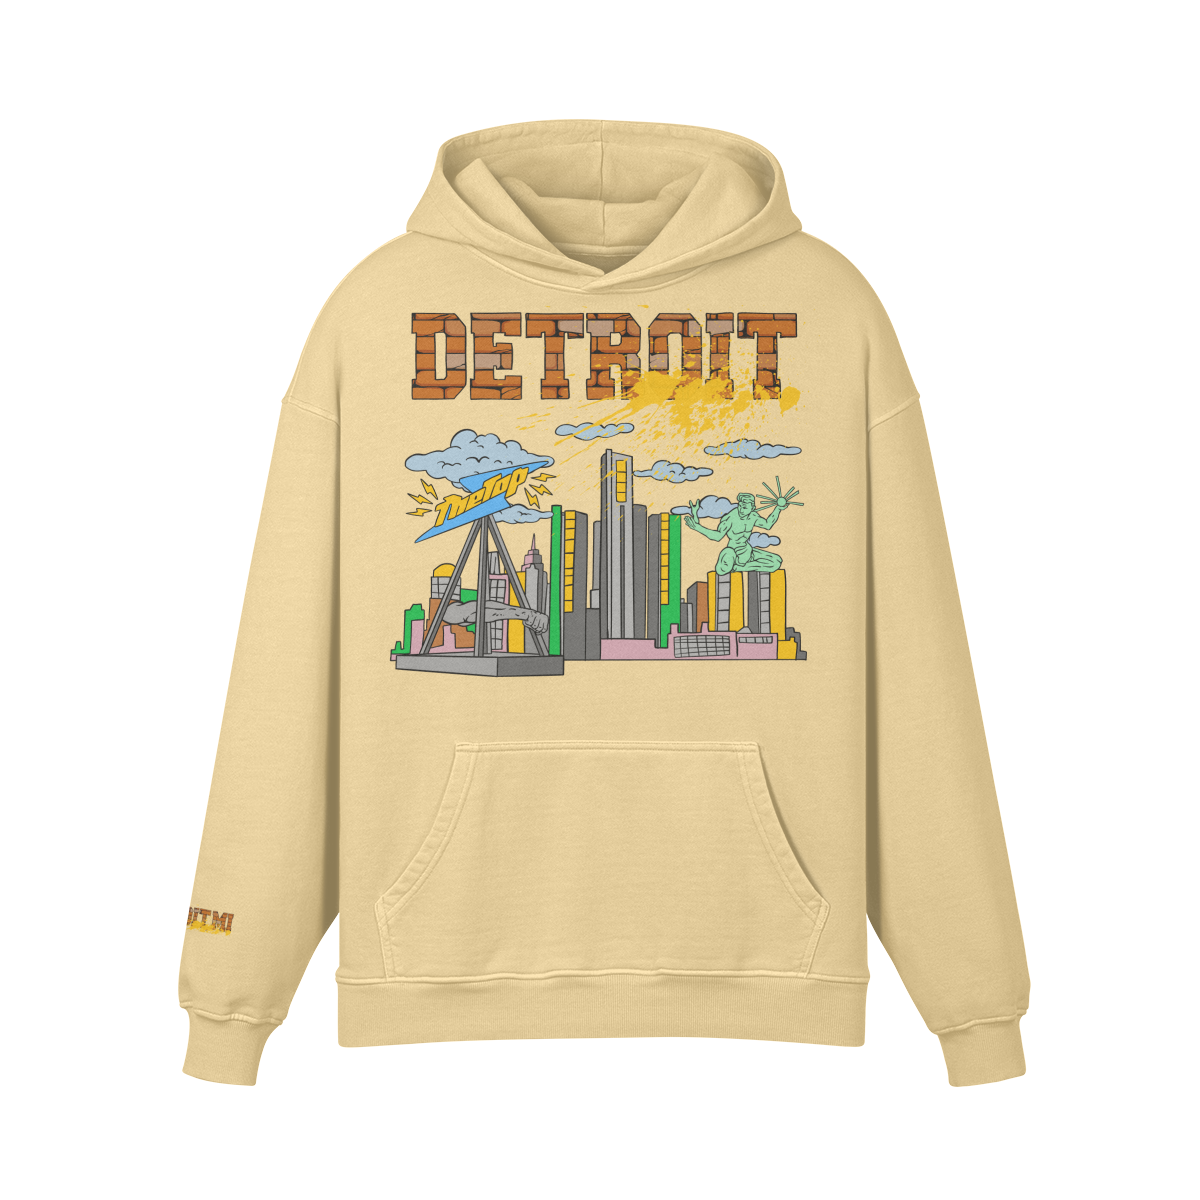 Detroit Hoodie